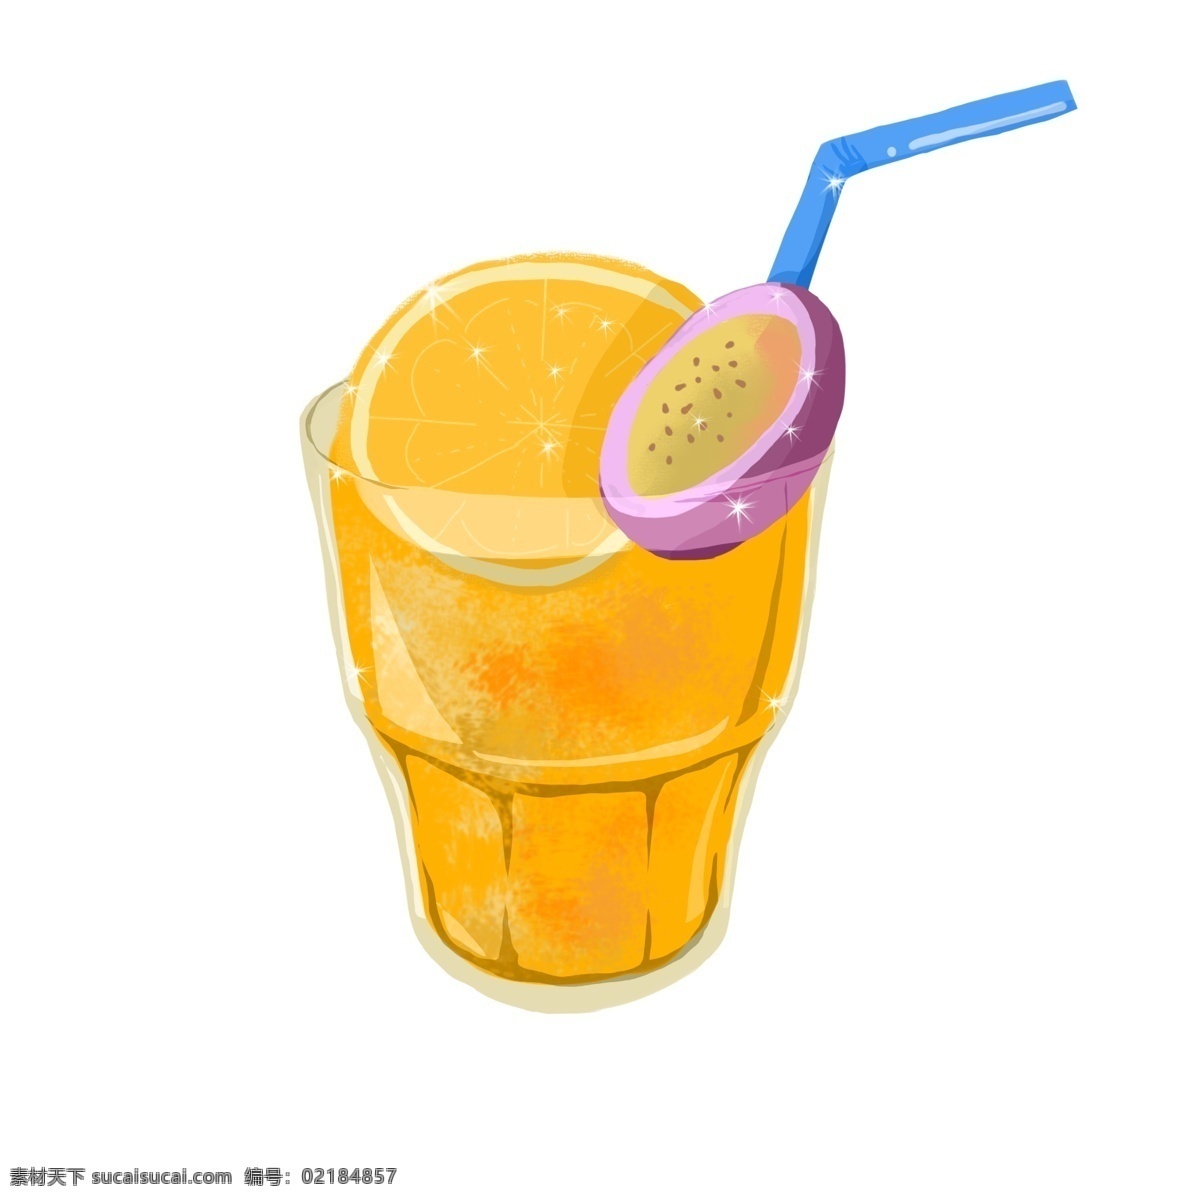 褐色果汁 夏日 凉爽 简洁 卡通 果汁 饮料 黄色